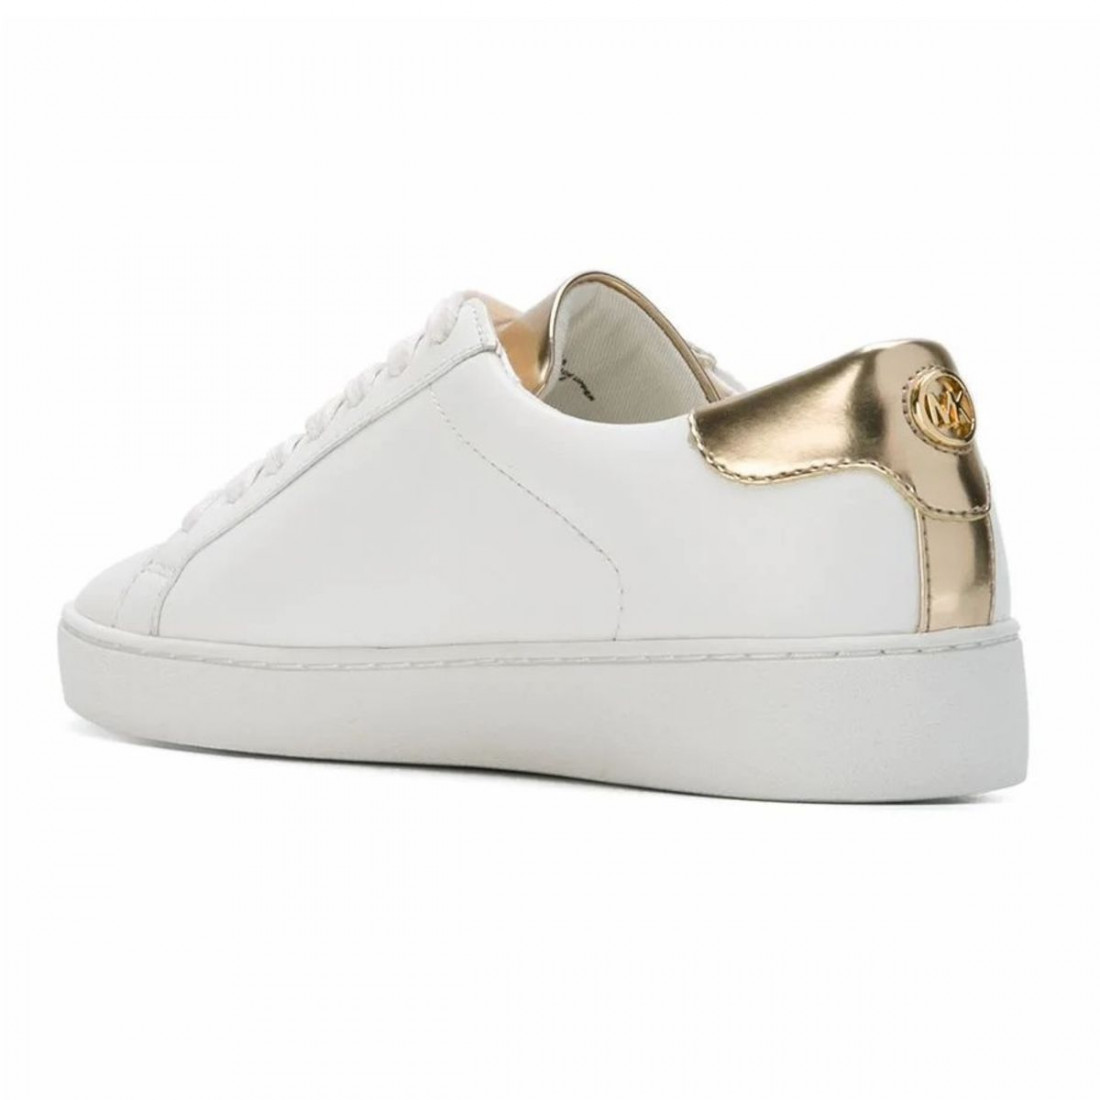 deelnemen willekeurig Eed Michael Kors Irving women's sneaker in white and gold leather